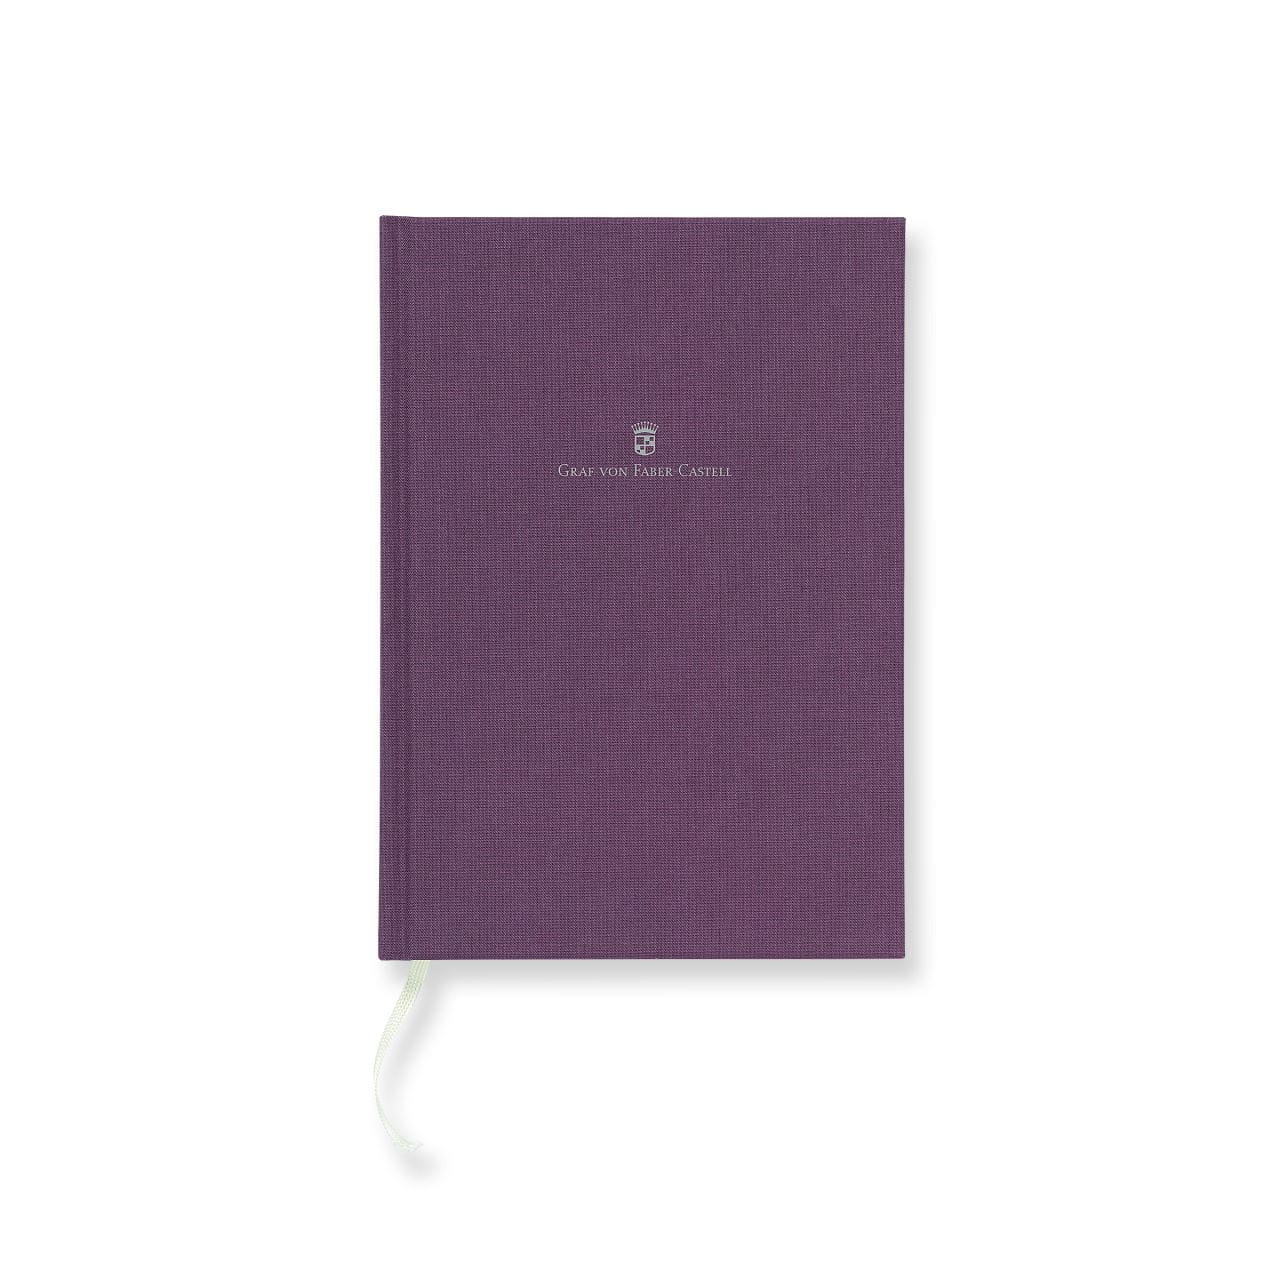 Graf-von-Faber-Castell - Book con copertina in lino A5 Viola